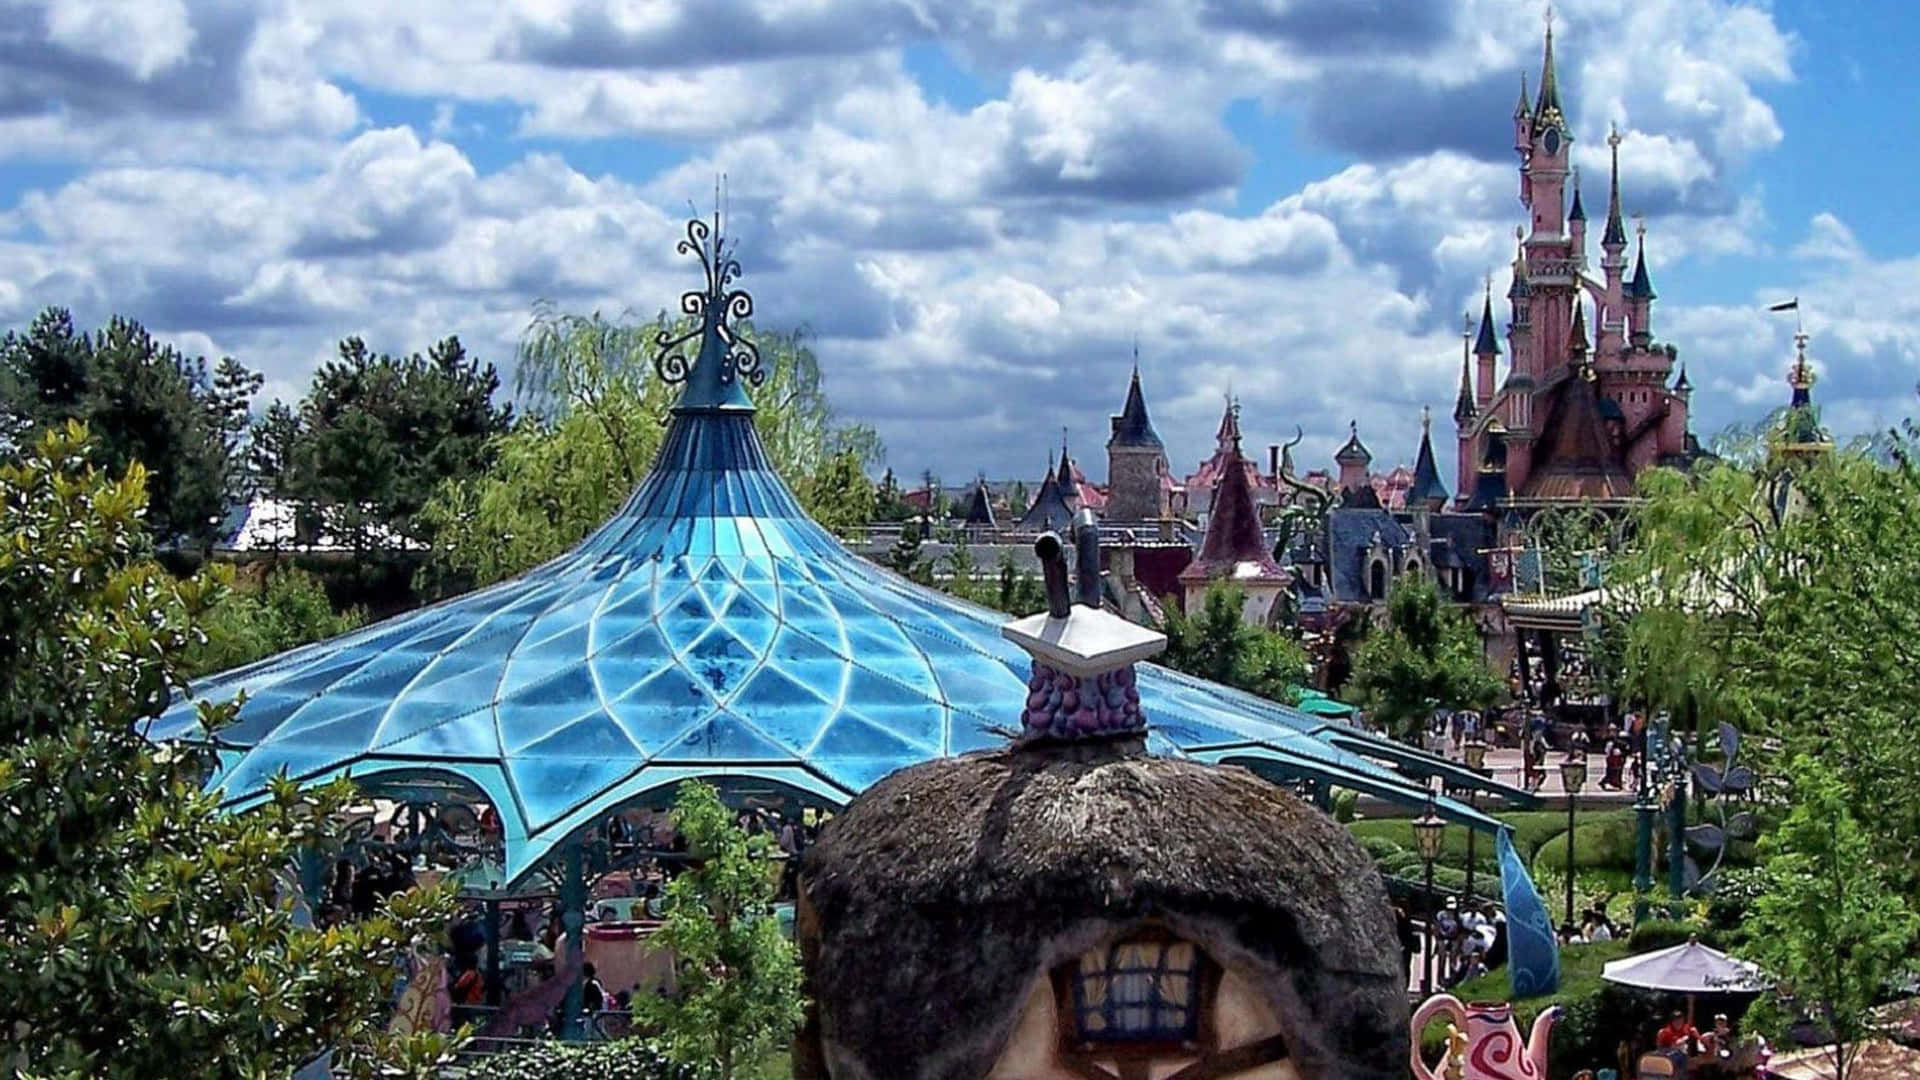 Trascorrimomenti Magici Di Divertimento Con La Famiglia E Gli Amici A Disneyland